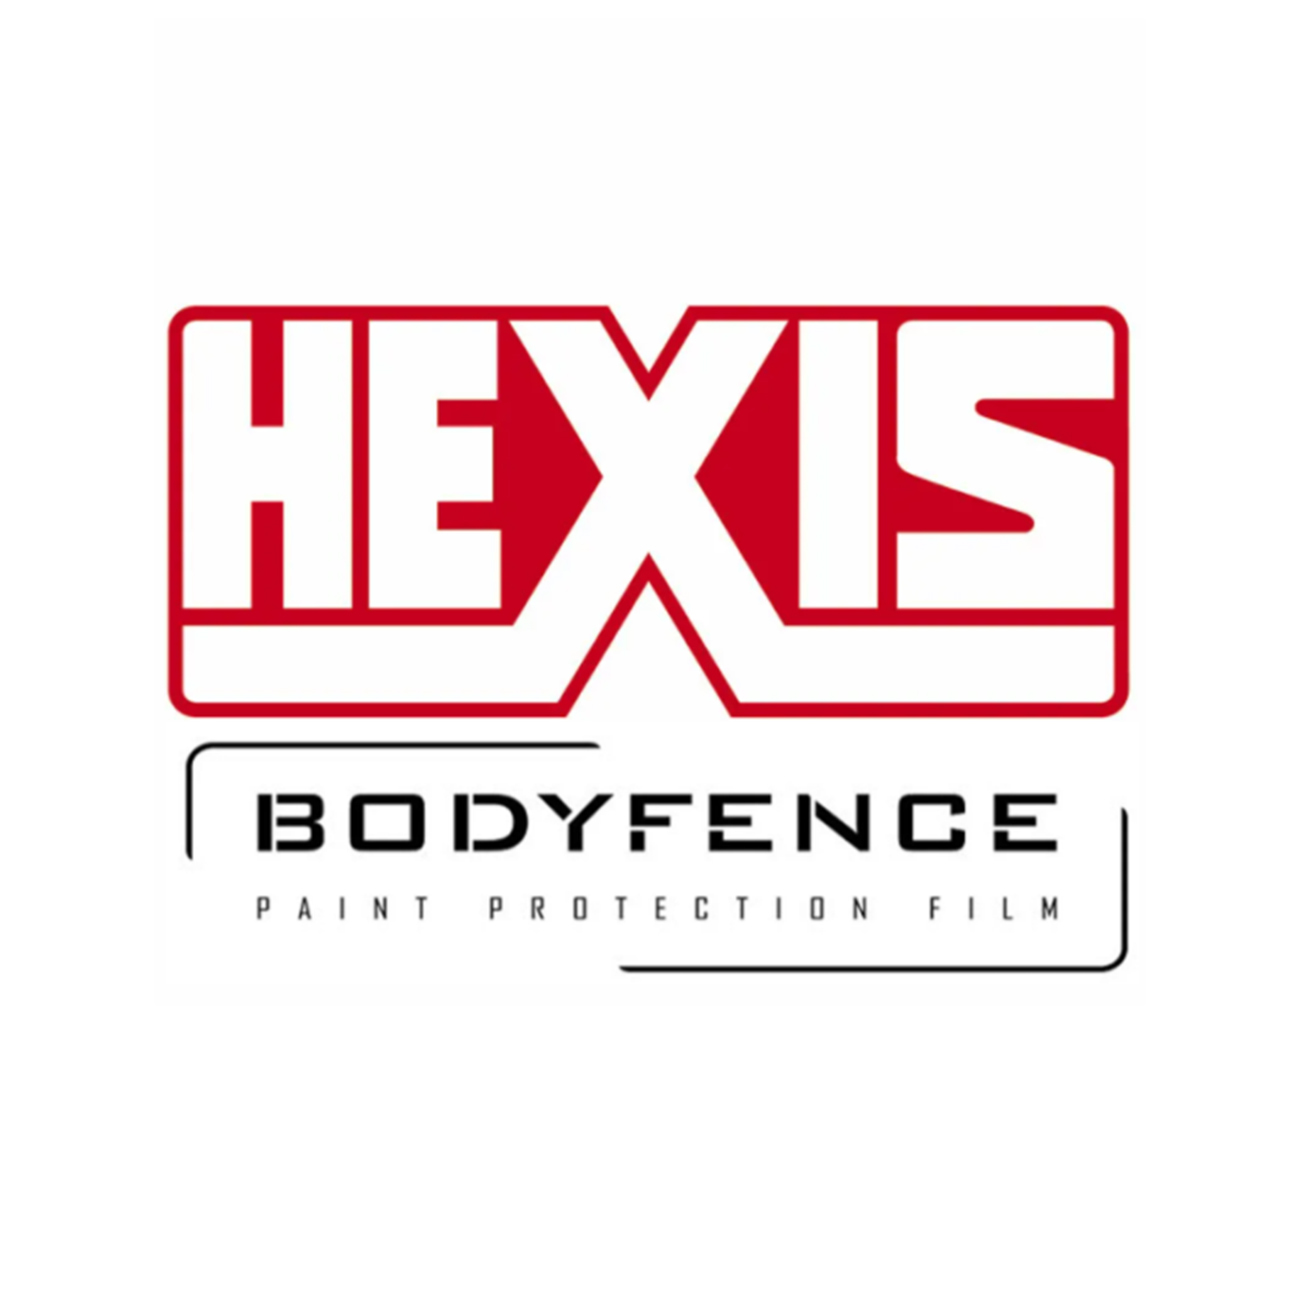 Hexis Bodyfence Х 91см 